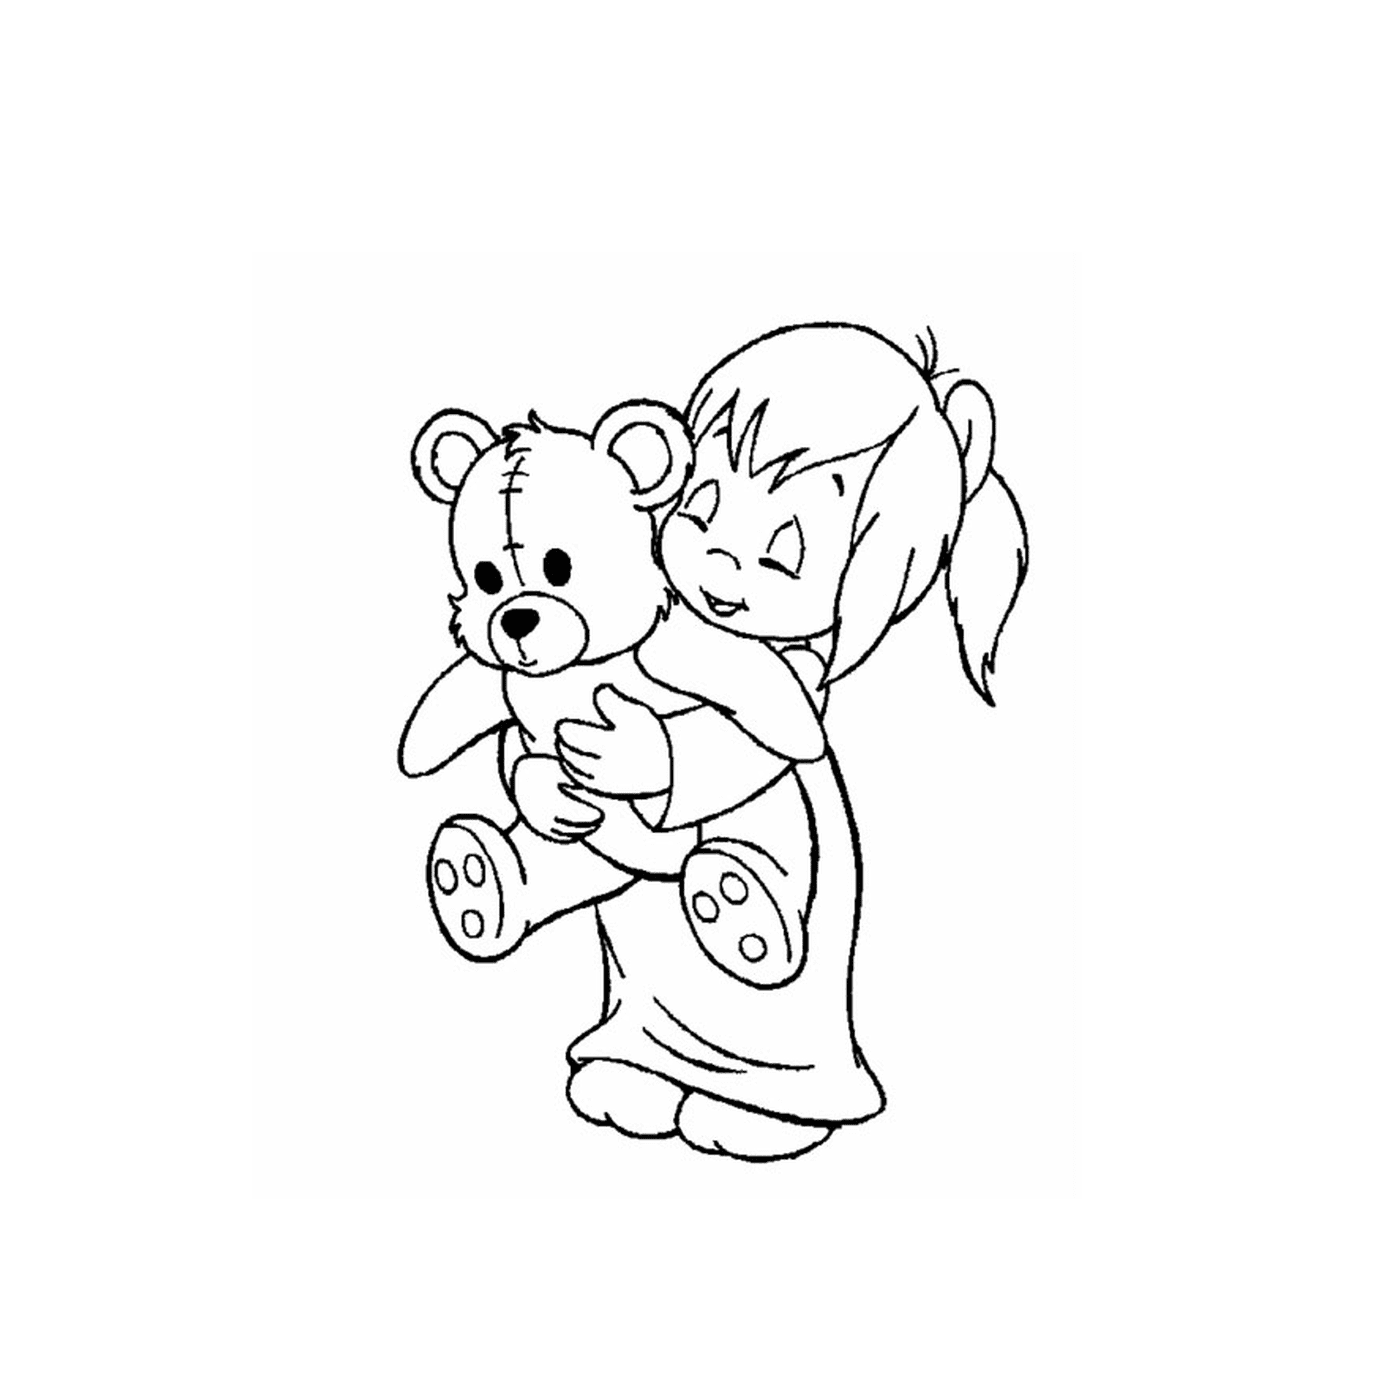  Маленькая девочка держит плюшевого медведя на руках 